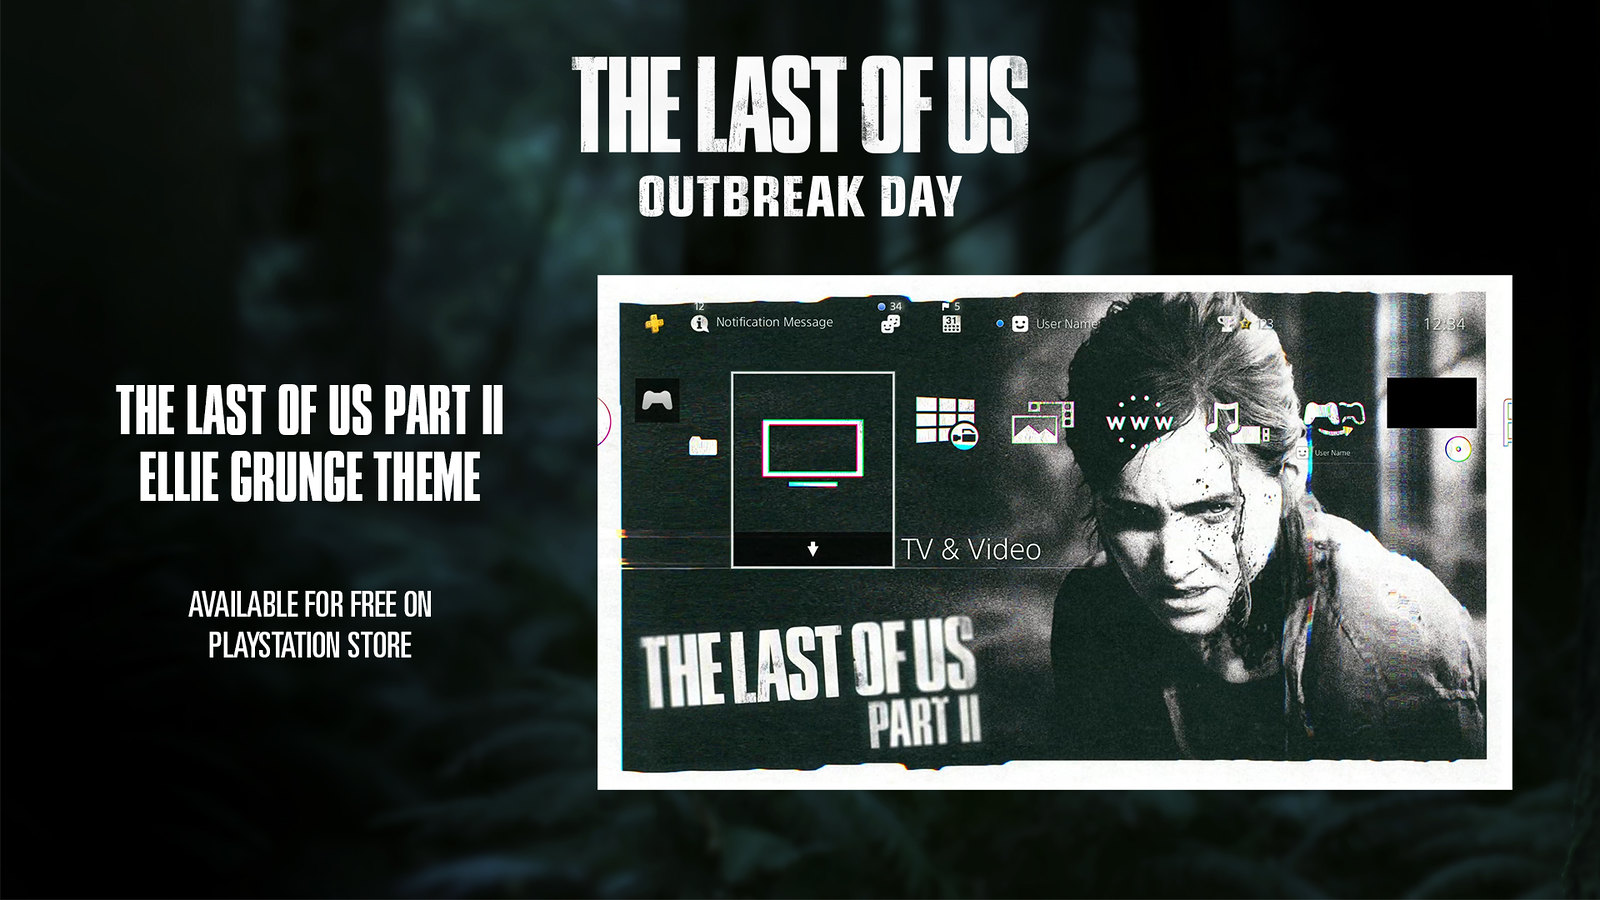 Naughty Dog celebra el Outbreak Day 2019 con un Theme gratuito de The Last of Us Part II